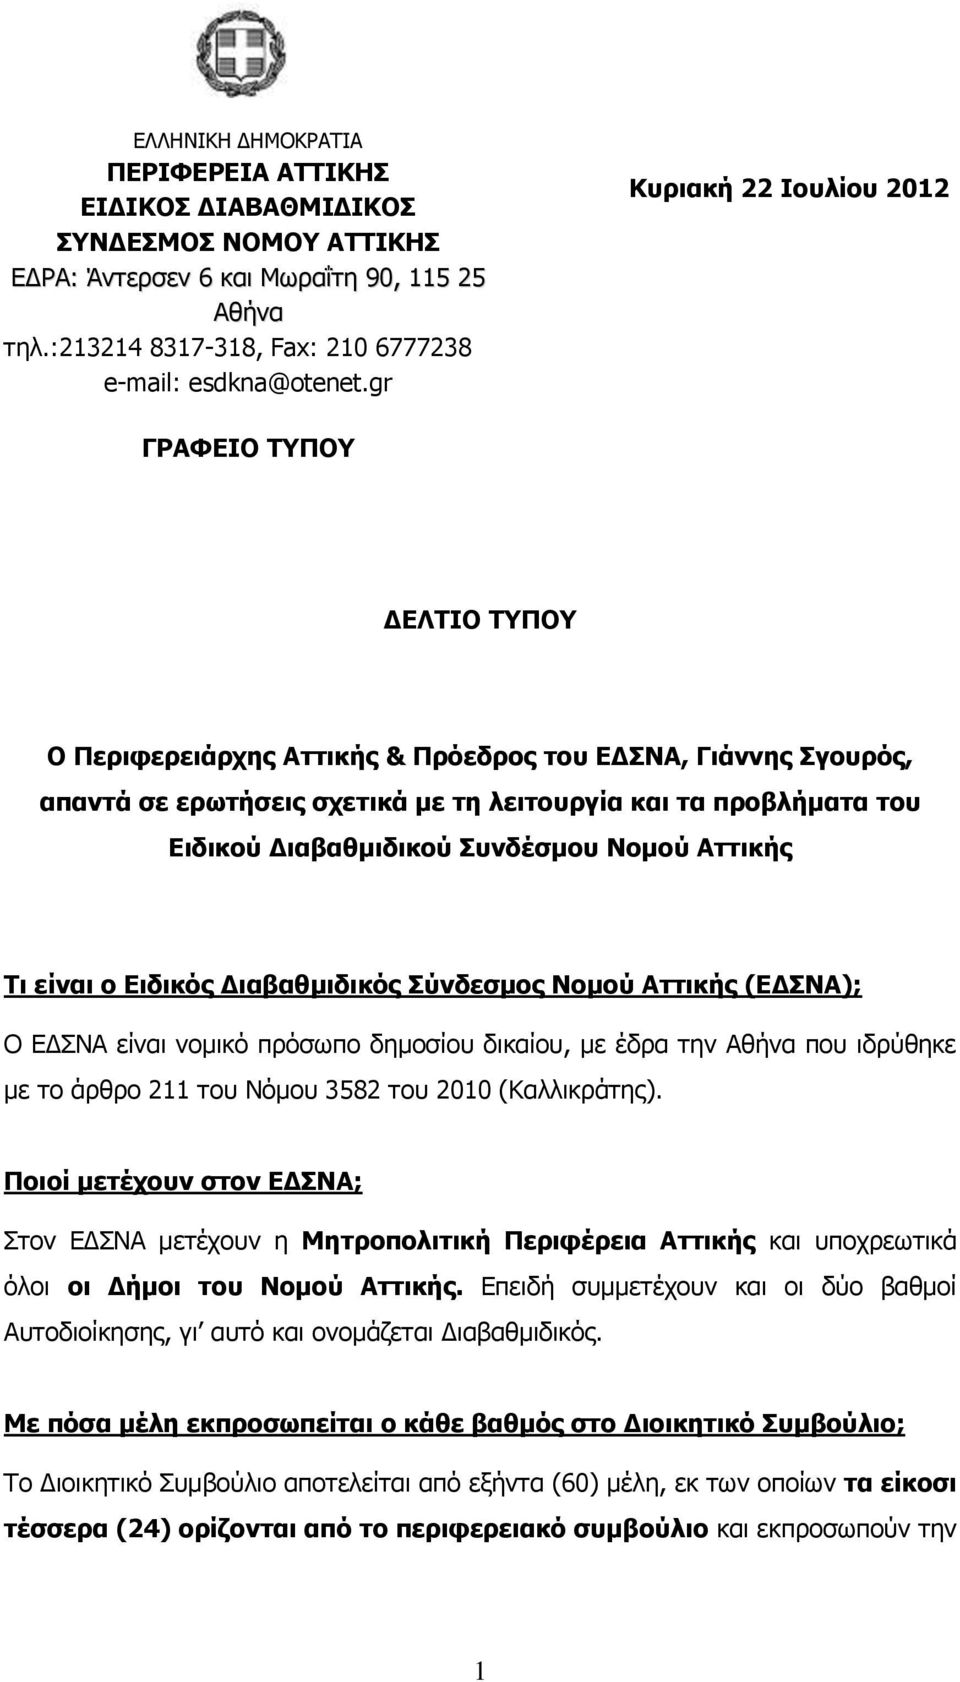 Διαβαθμιδικού Συνδέσμου Νομού Αττικής Τι είναι ο Ειδικός Διαβαθμιδικός Σύνδεσμος Νομού Αττικής (ΕΔΣΝΑ); Ο ΕΔΣΝΑ είναι νομικό πρόσωπο δημοσίου δικαίου, με έδρα την Αθήνα που ιδρύθηκε με το άρθρο 211